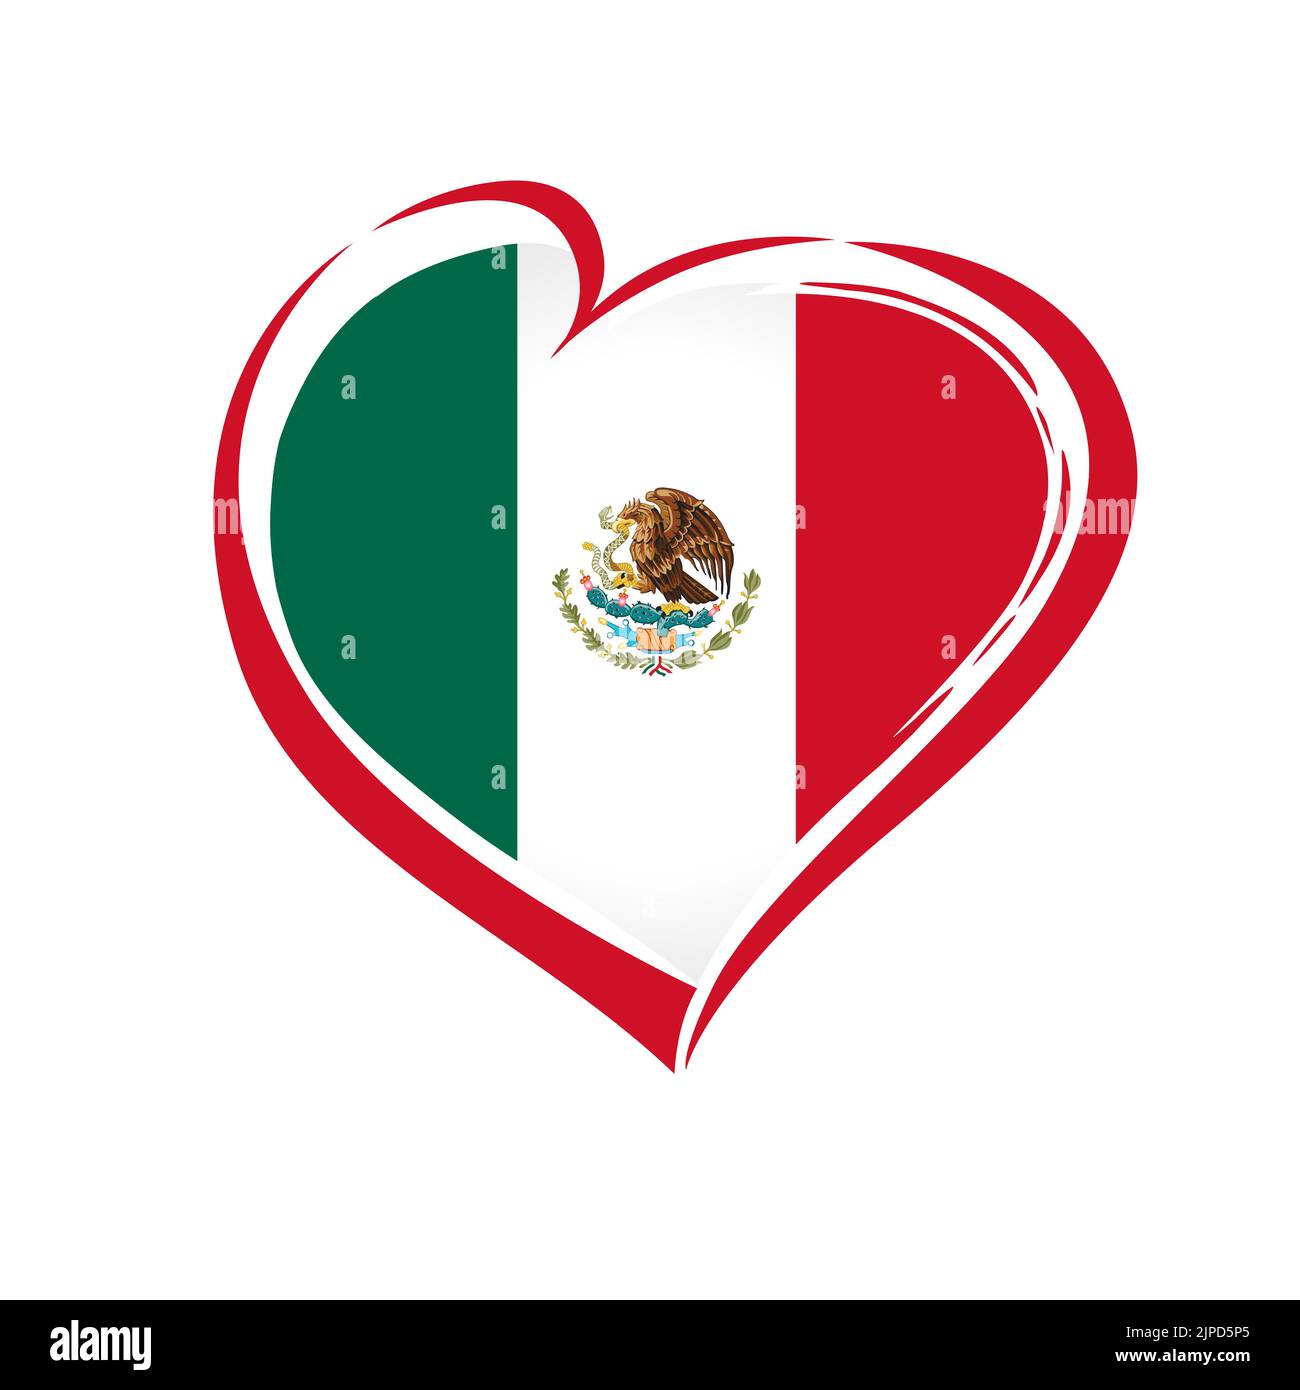 Love Mexico Emblem farbig. Unabhängigkeitstag der Vereinigten Mexikanischen Staaten Vektor-Hintergrund mit rotem Herz in nationalen mexikanischen Flagge Farben Stock Vektor